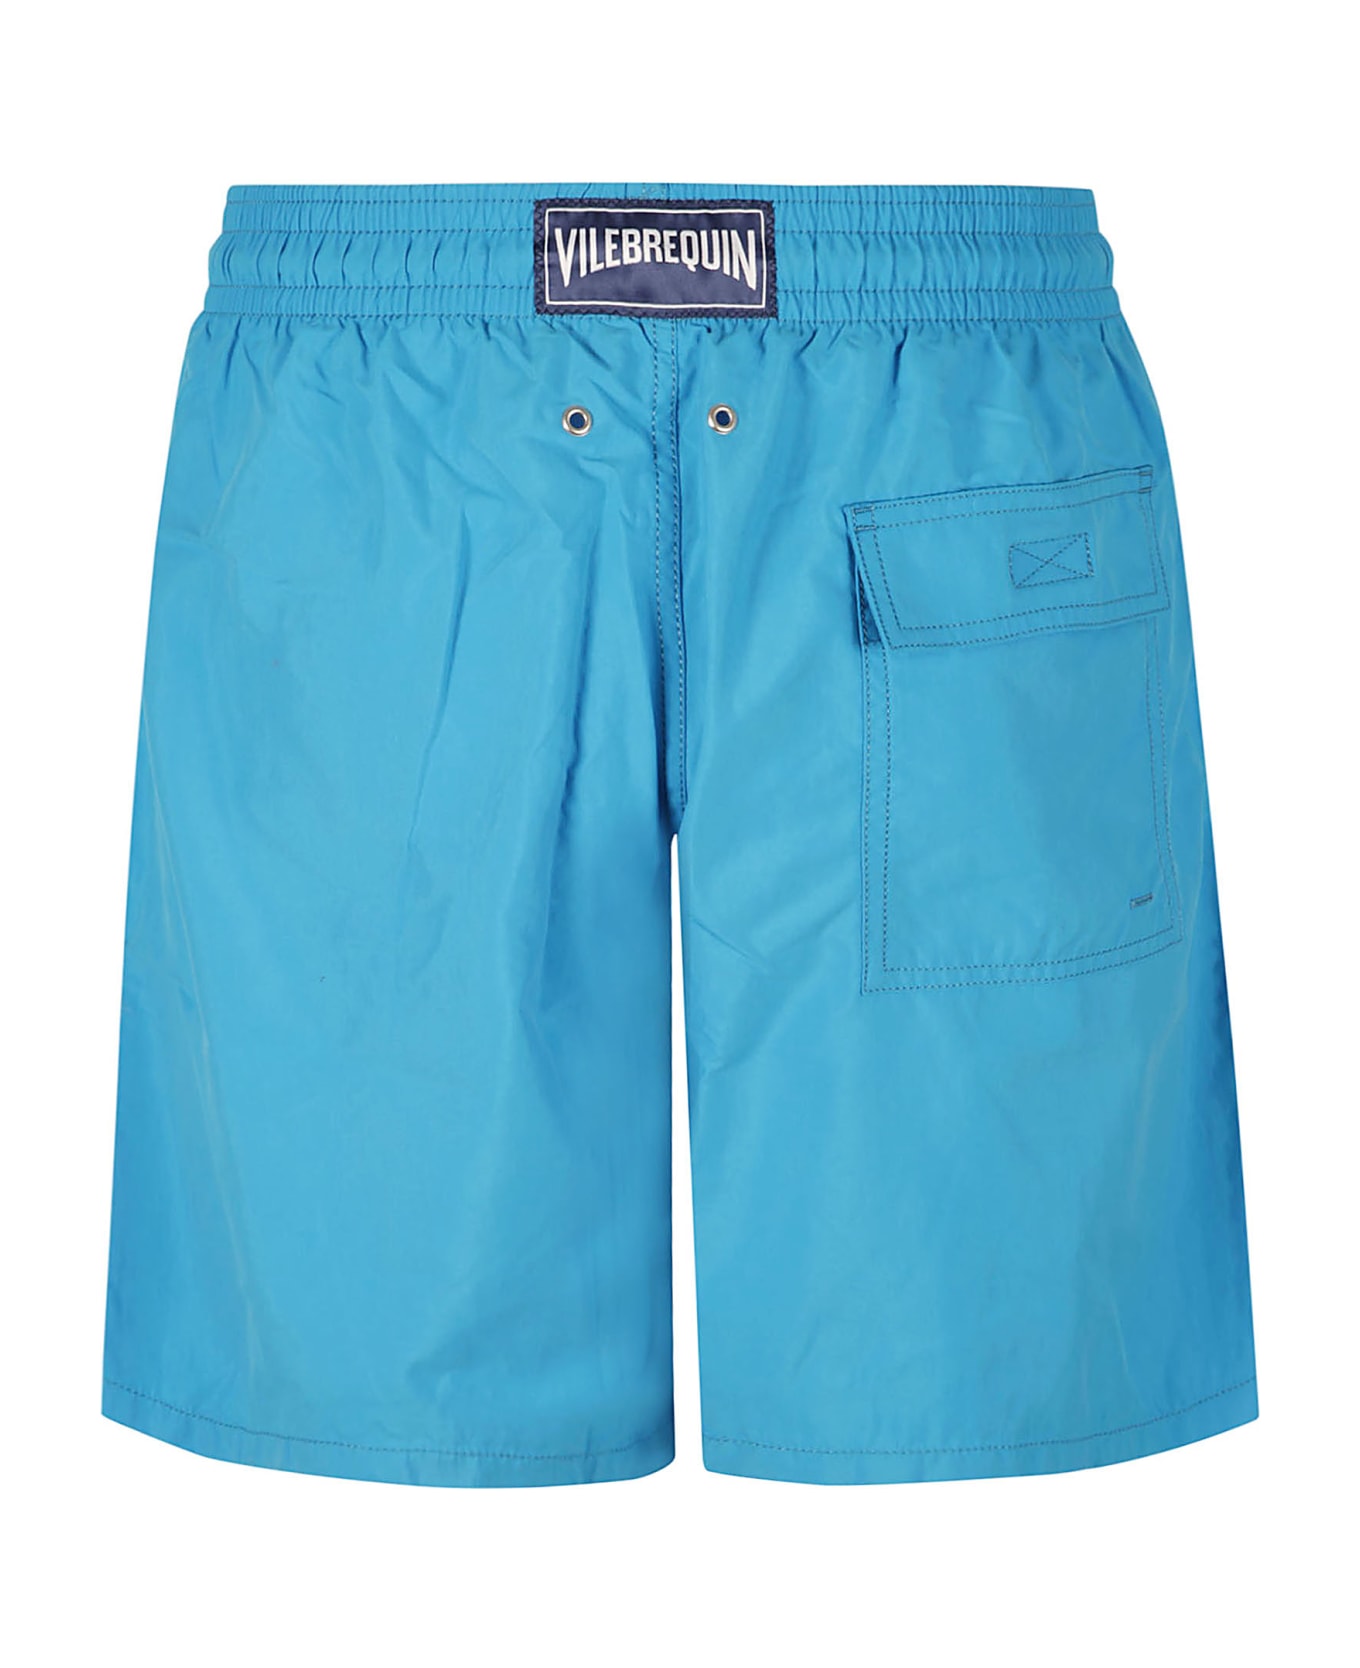 Vilebrequin Moorea Shorts - Blue Hawaii